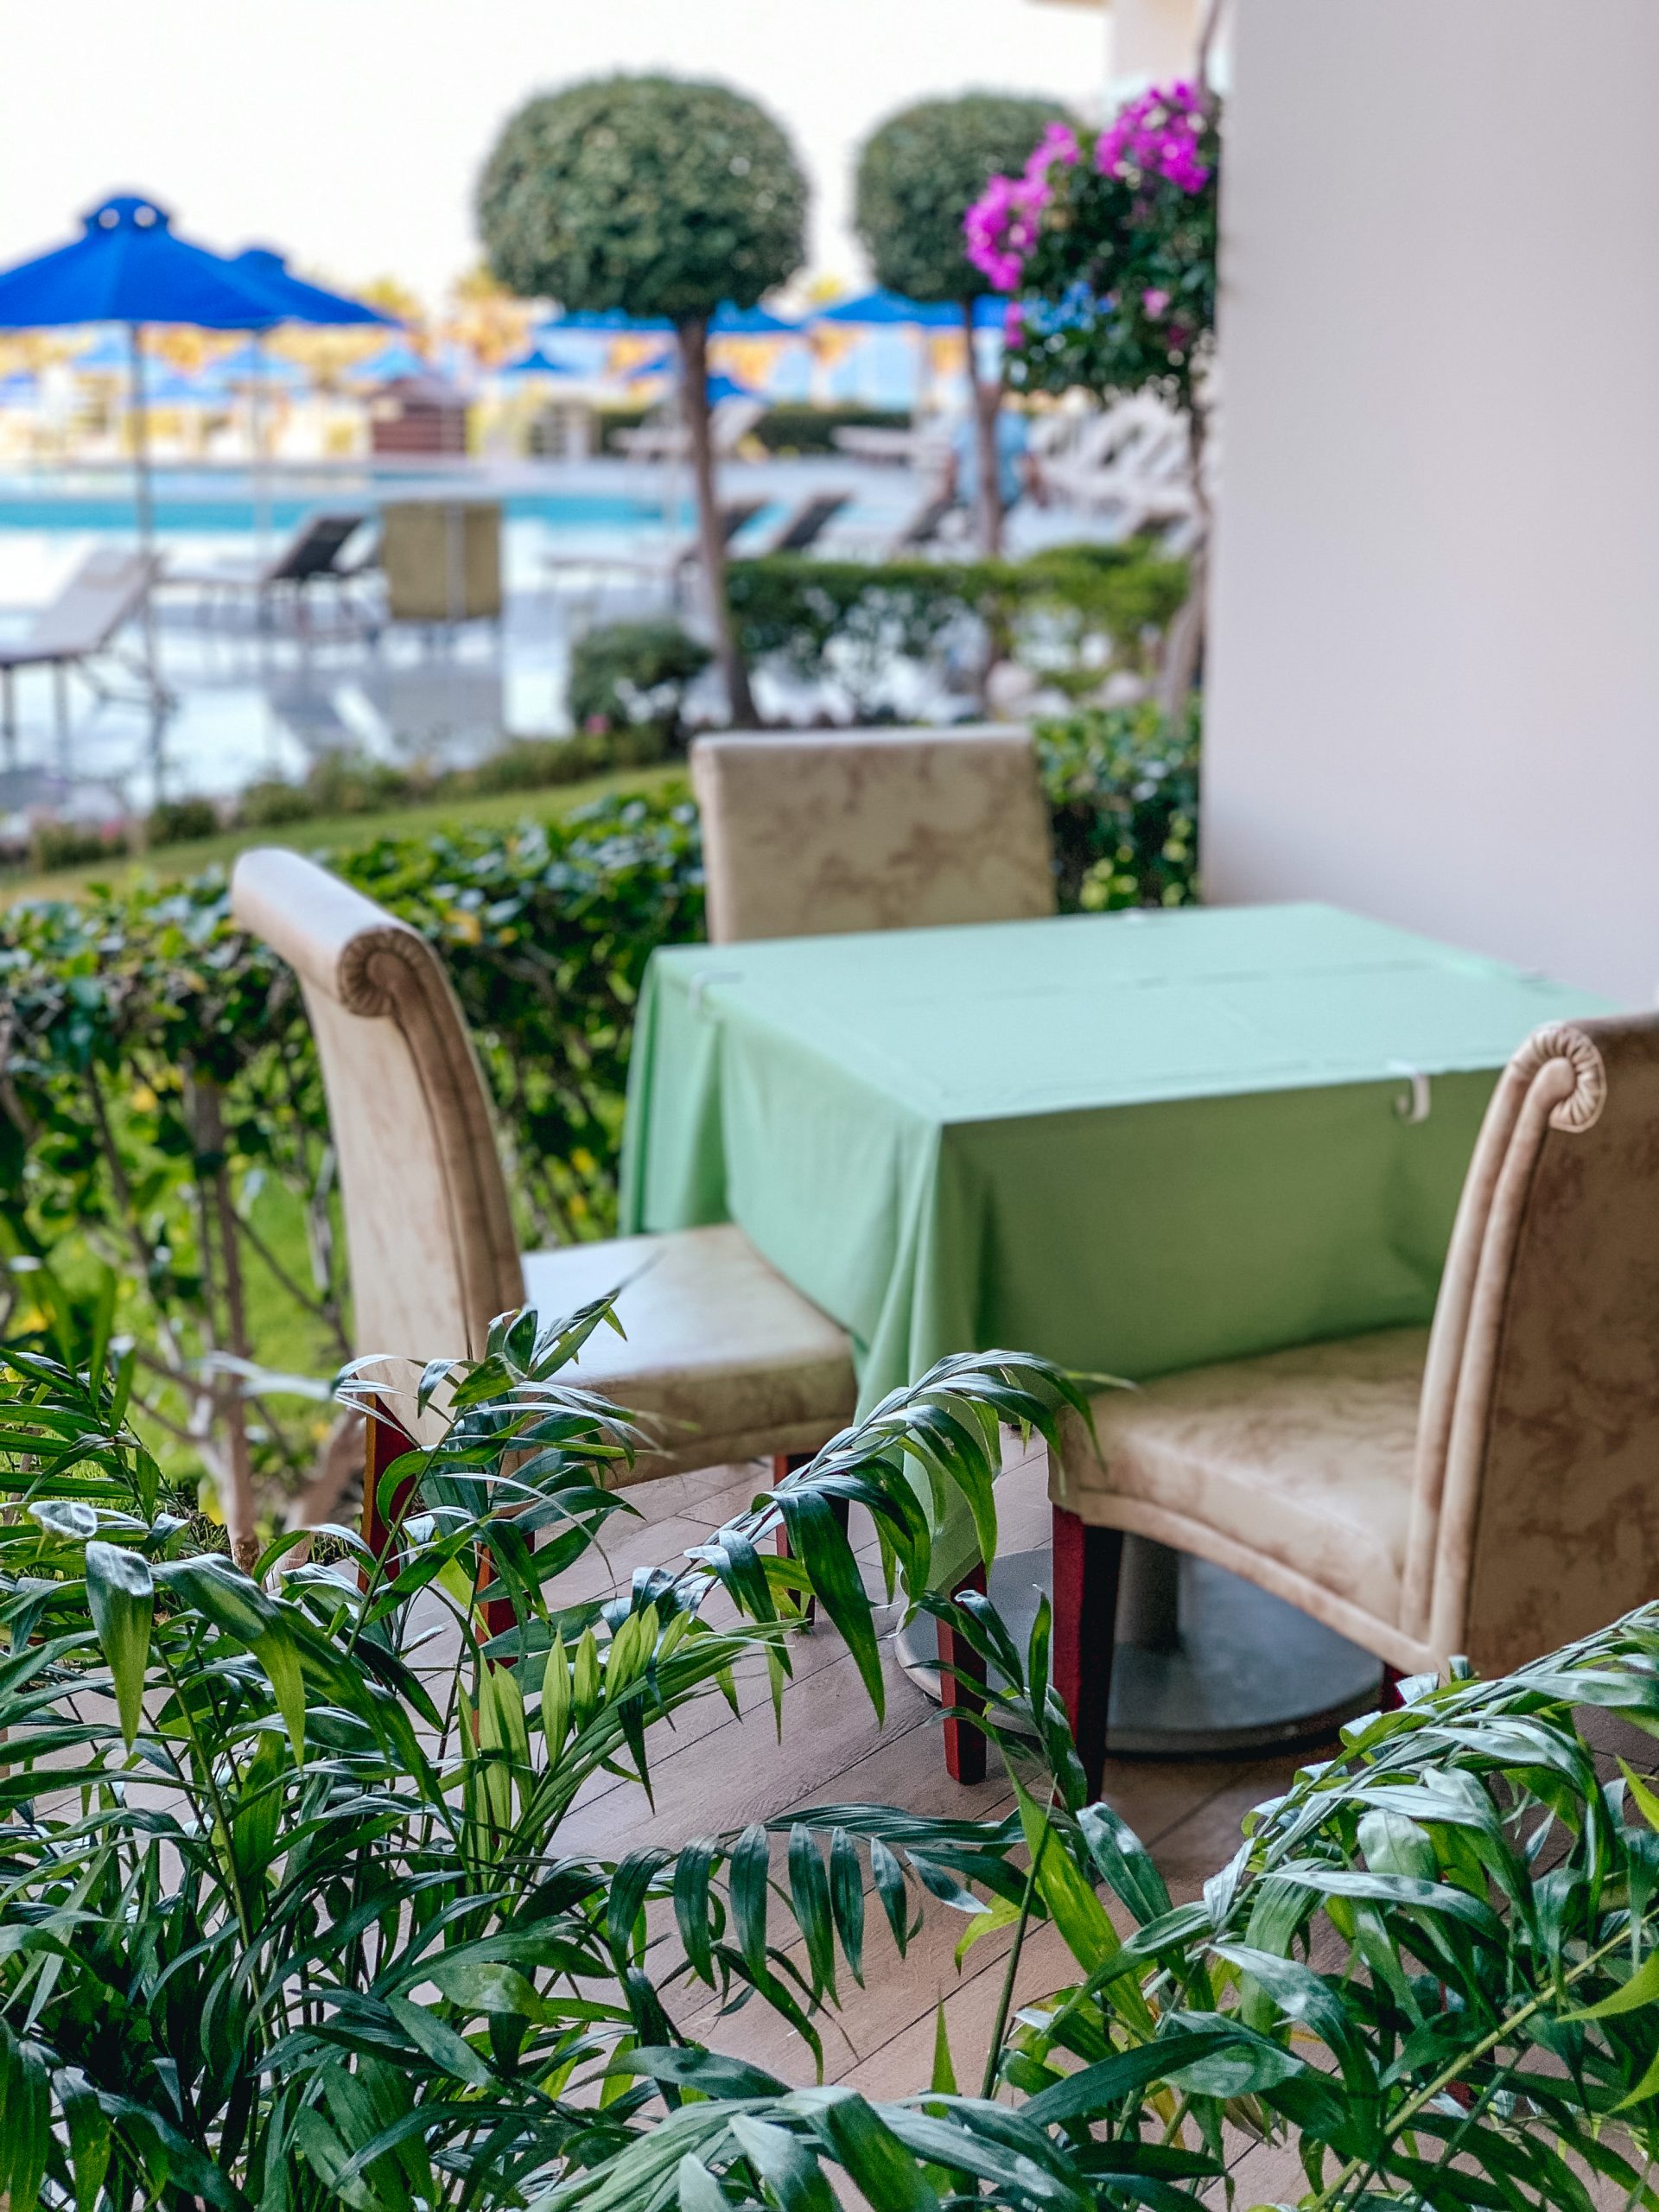 Holiday in Rhodes, Greece. Atrium Hotels. Atrium Platinum Resort Hotel & Spa. Best Hotels in Rhodes | ELIA & TRAMONTO restaurant – MEDITERRANEAN CUISINE